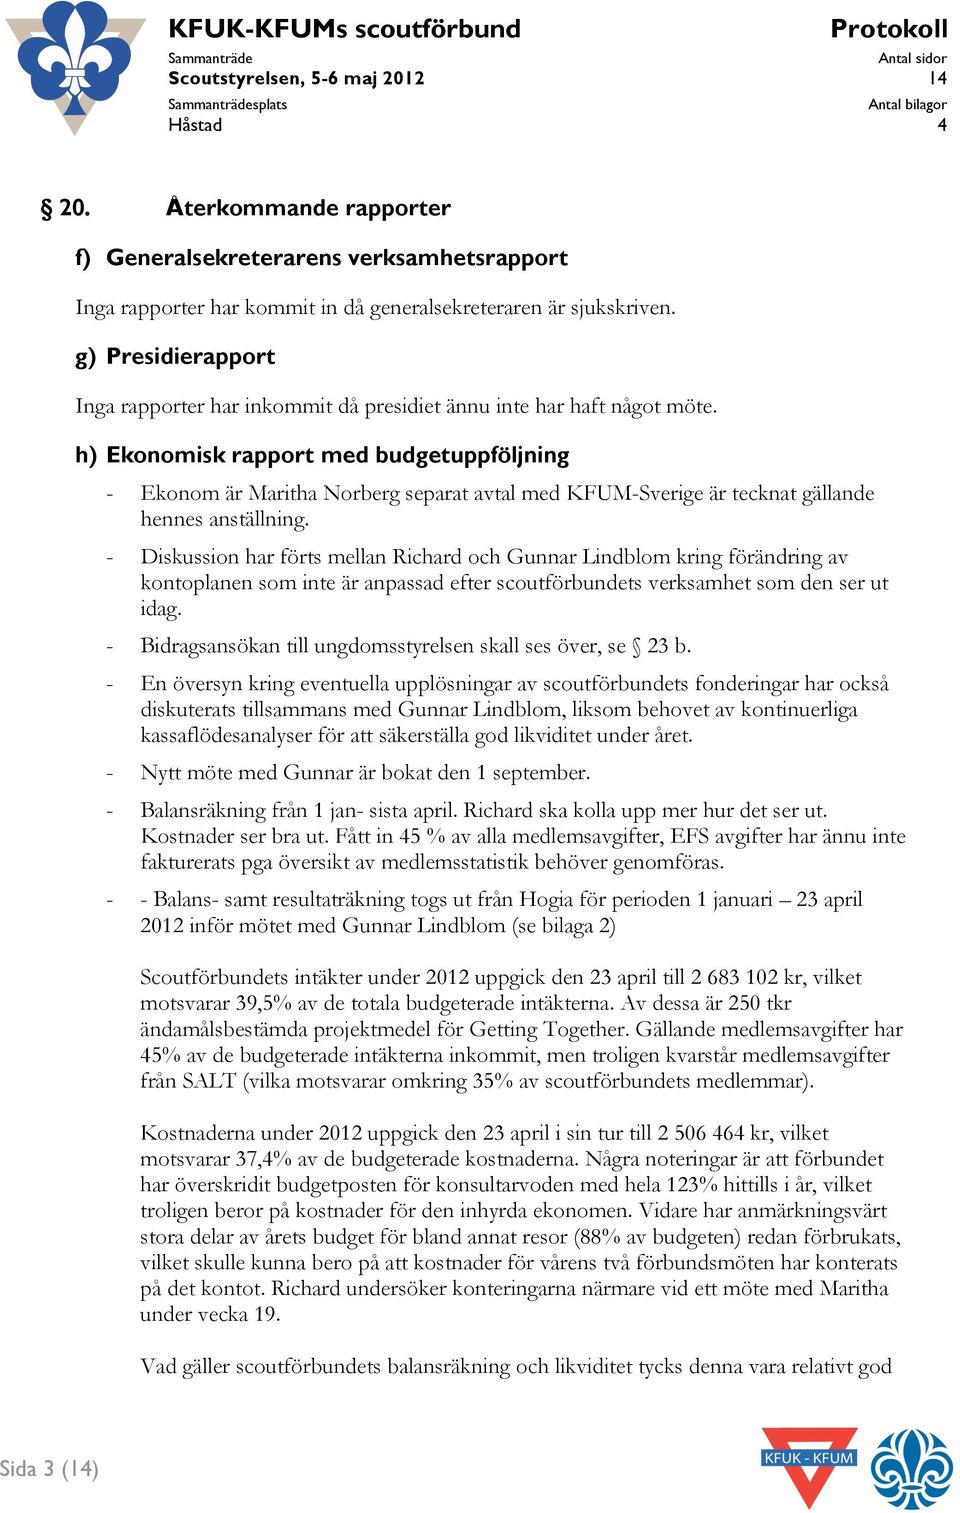 h) Ekonomisk rapport med budgetuppföljning - Ekonom är Maritha Norberg separat avtal med KFUM-Sverige är tecknat gällande hennes anställning.